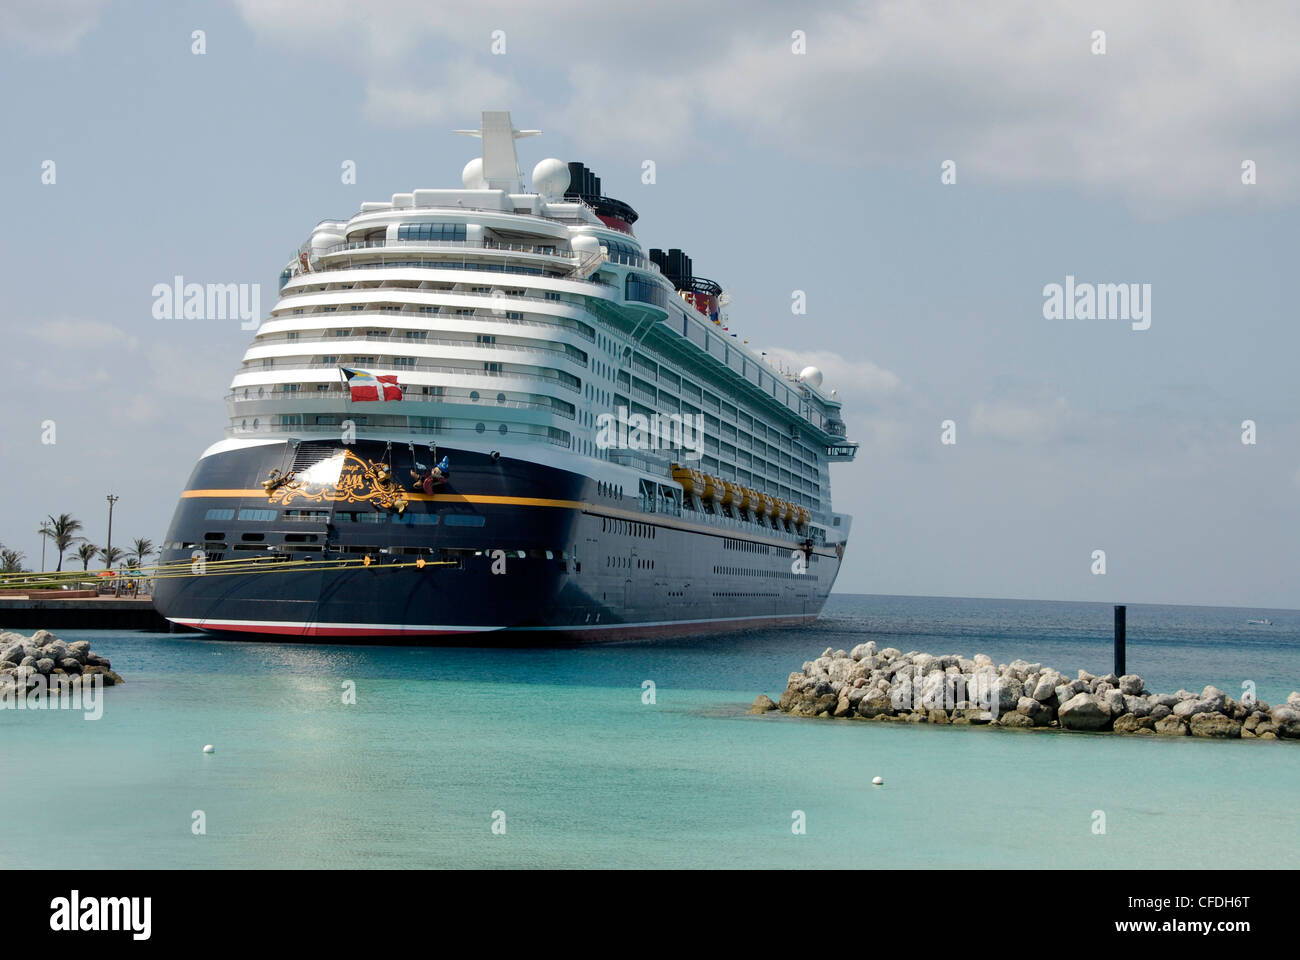 La ligne de croisière de Disney Disney Dream bateau de croisière sur l'île privée de Castaway Cay aux Bahamas Banque D'Images